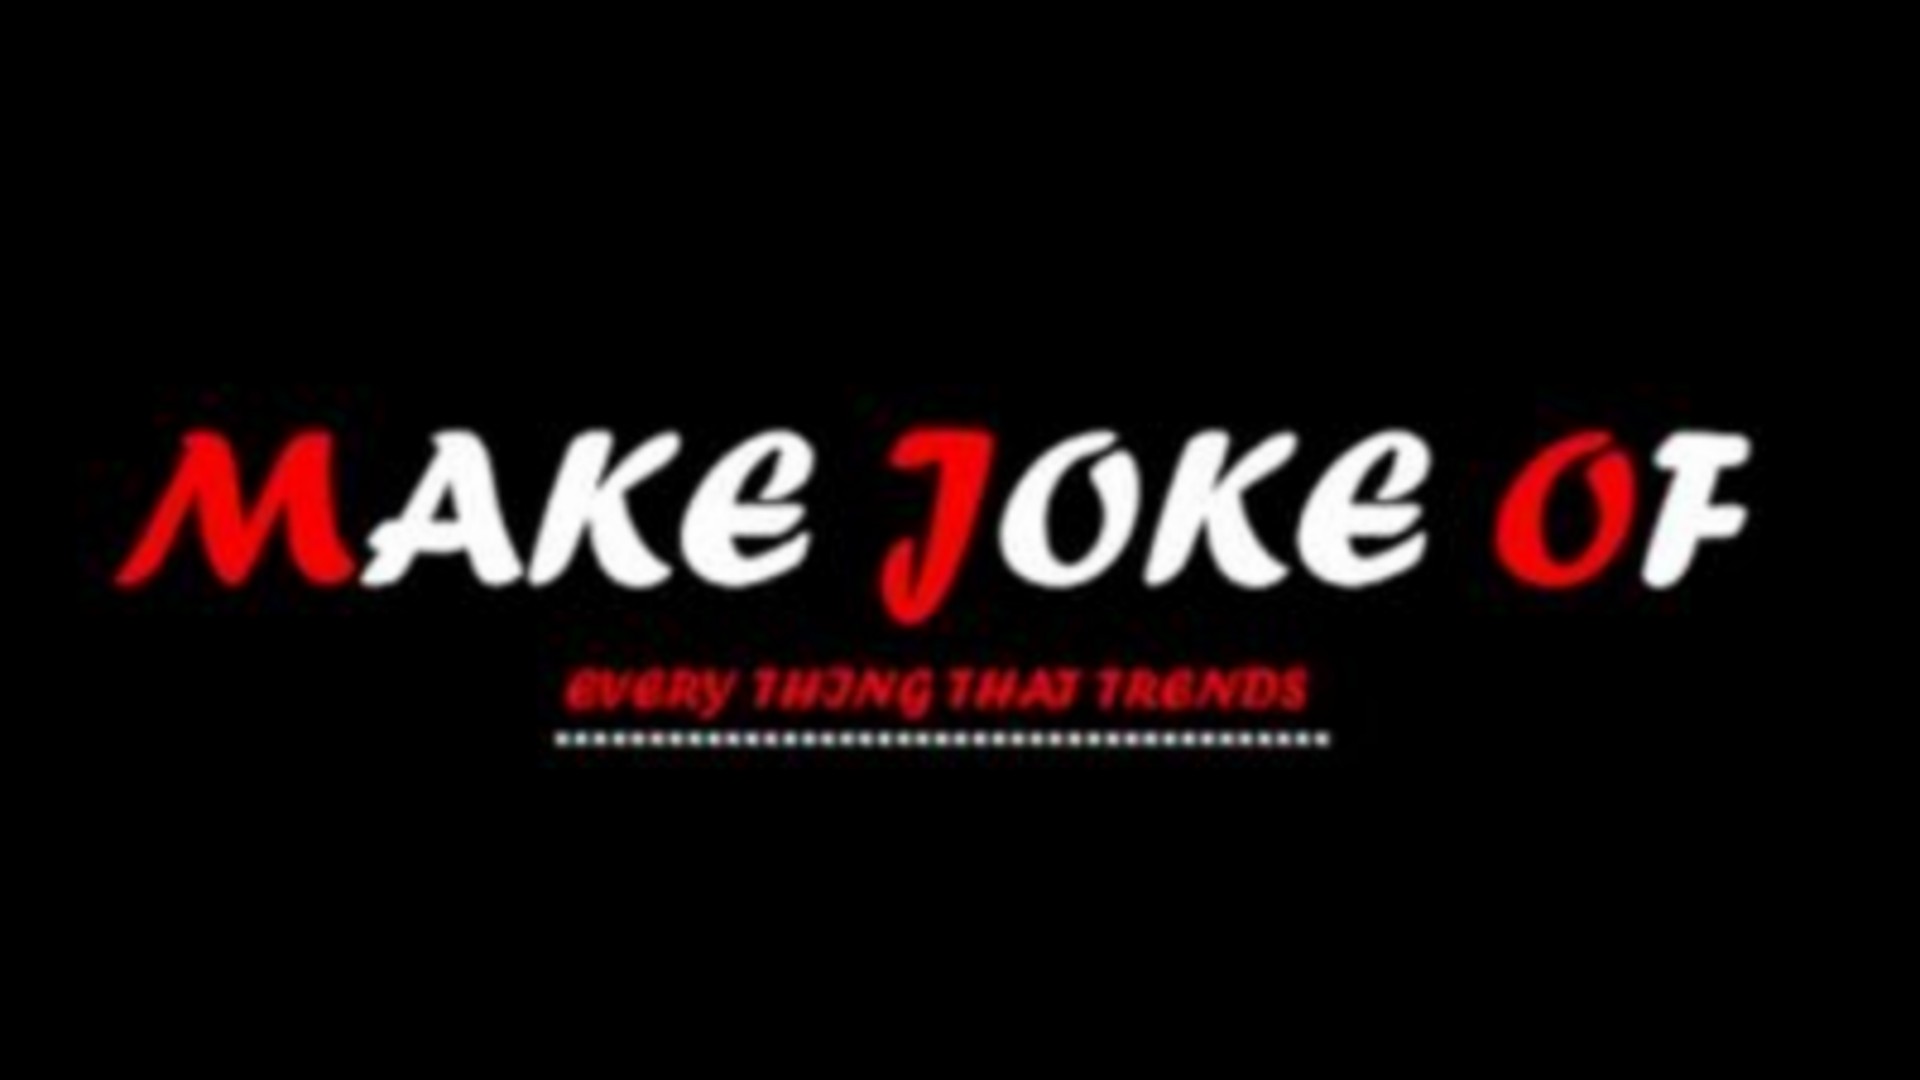 Make Joke Of